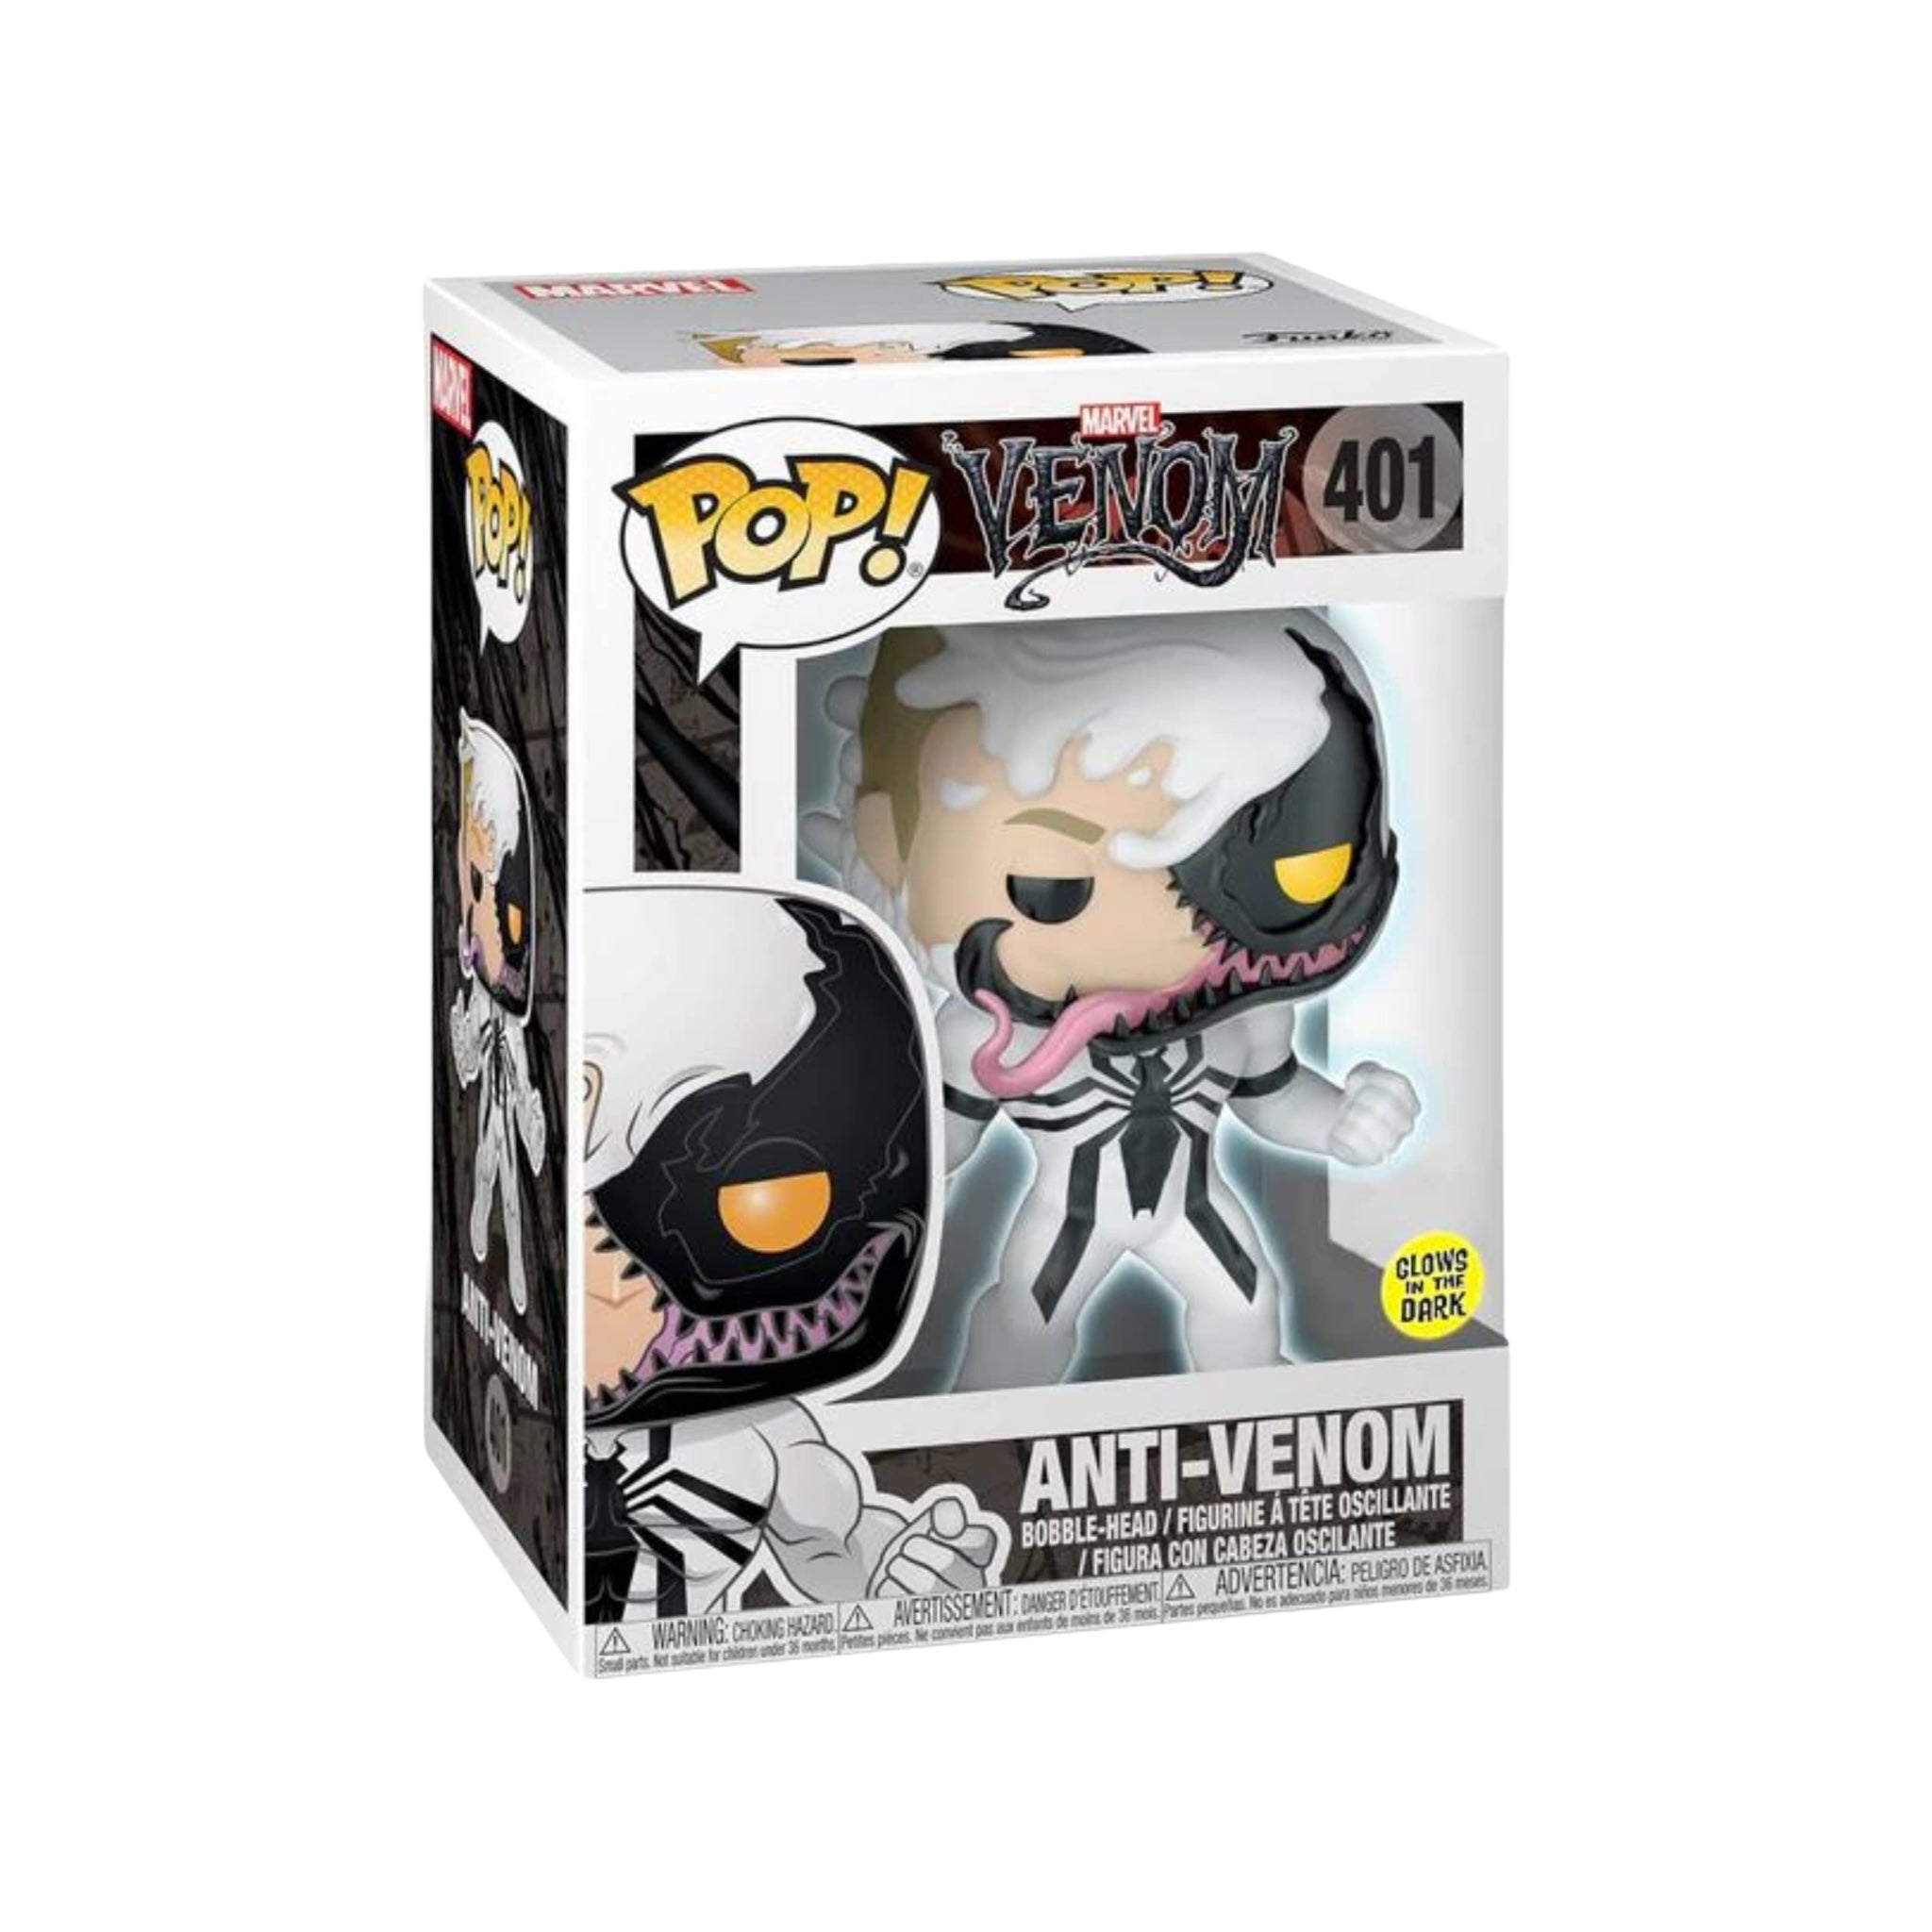 Anti-Venom #401 (Glows in the Dark) Funko Pop! - Marvel: Venom